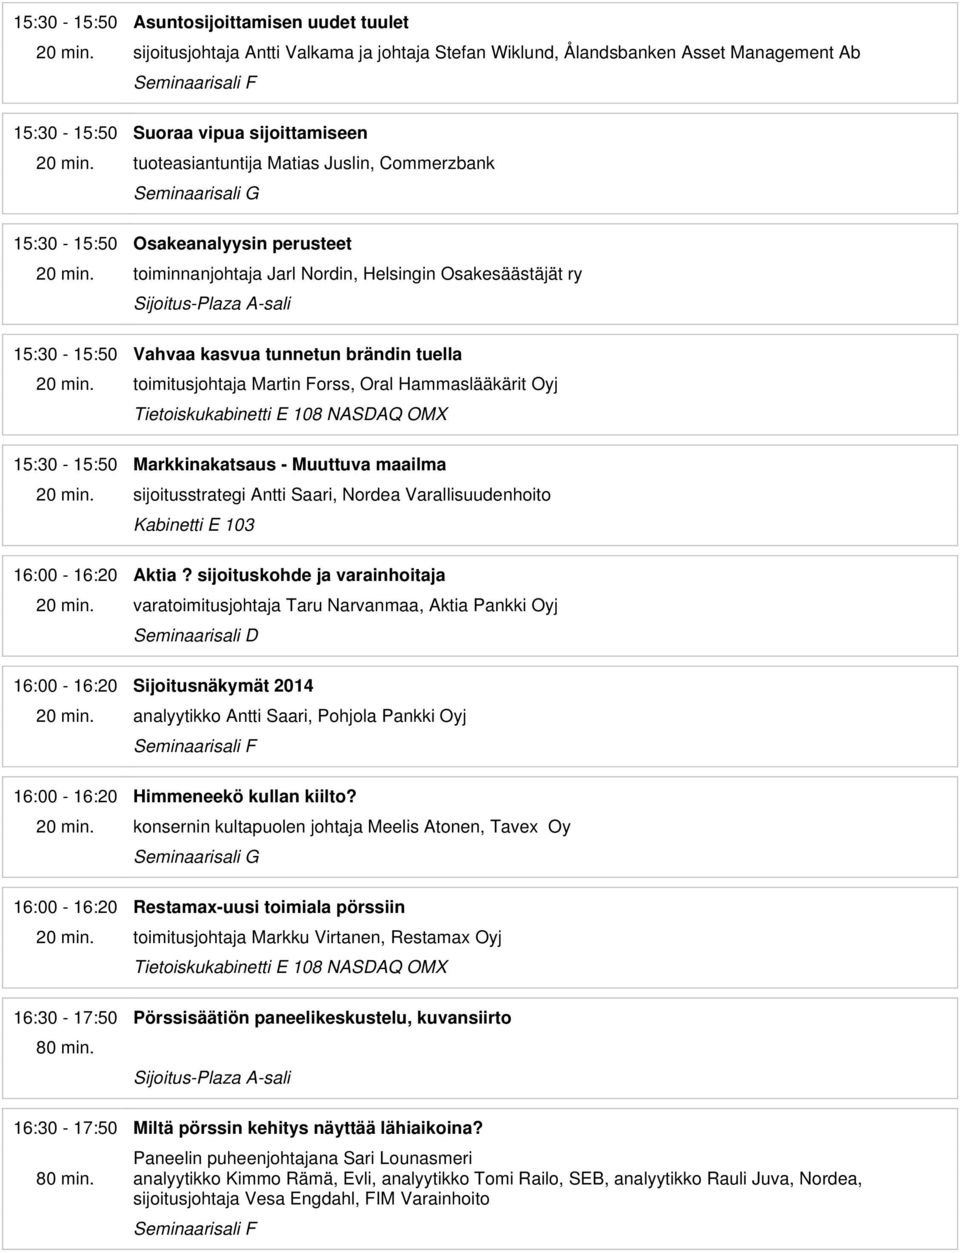 Hammaslääkärit Oyj 15:30-15:50 Markkinakatsaus - Muuttuva maailma sijoitusstrategi Antti Saari, Nordea Varallisuudenhoito 16:00-16:20 Aktia?